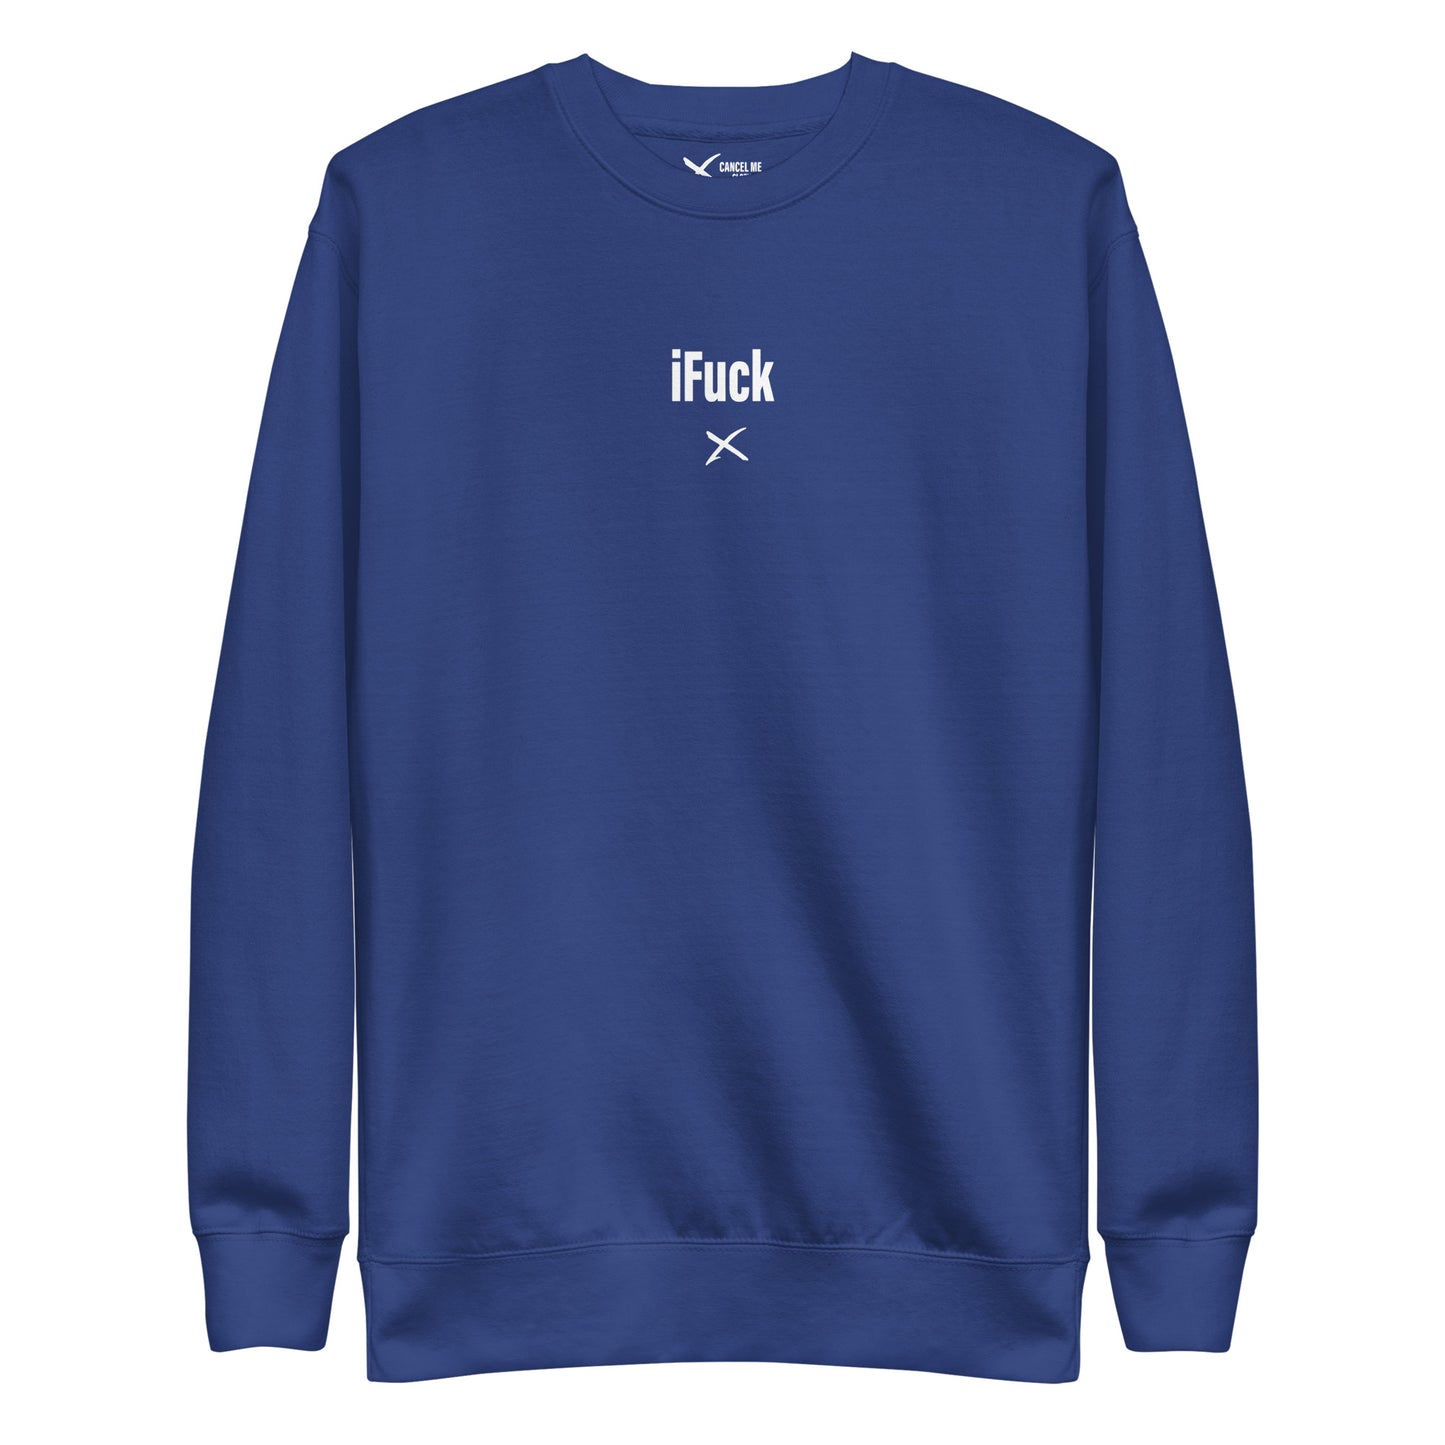 iFuck - Sweatshirt